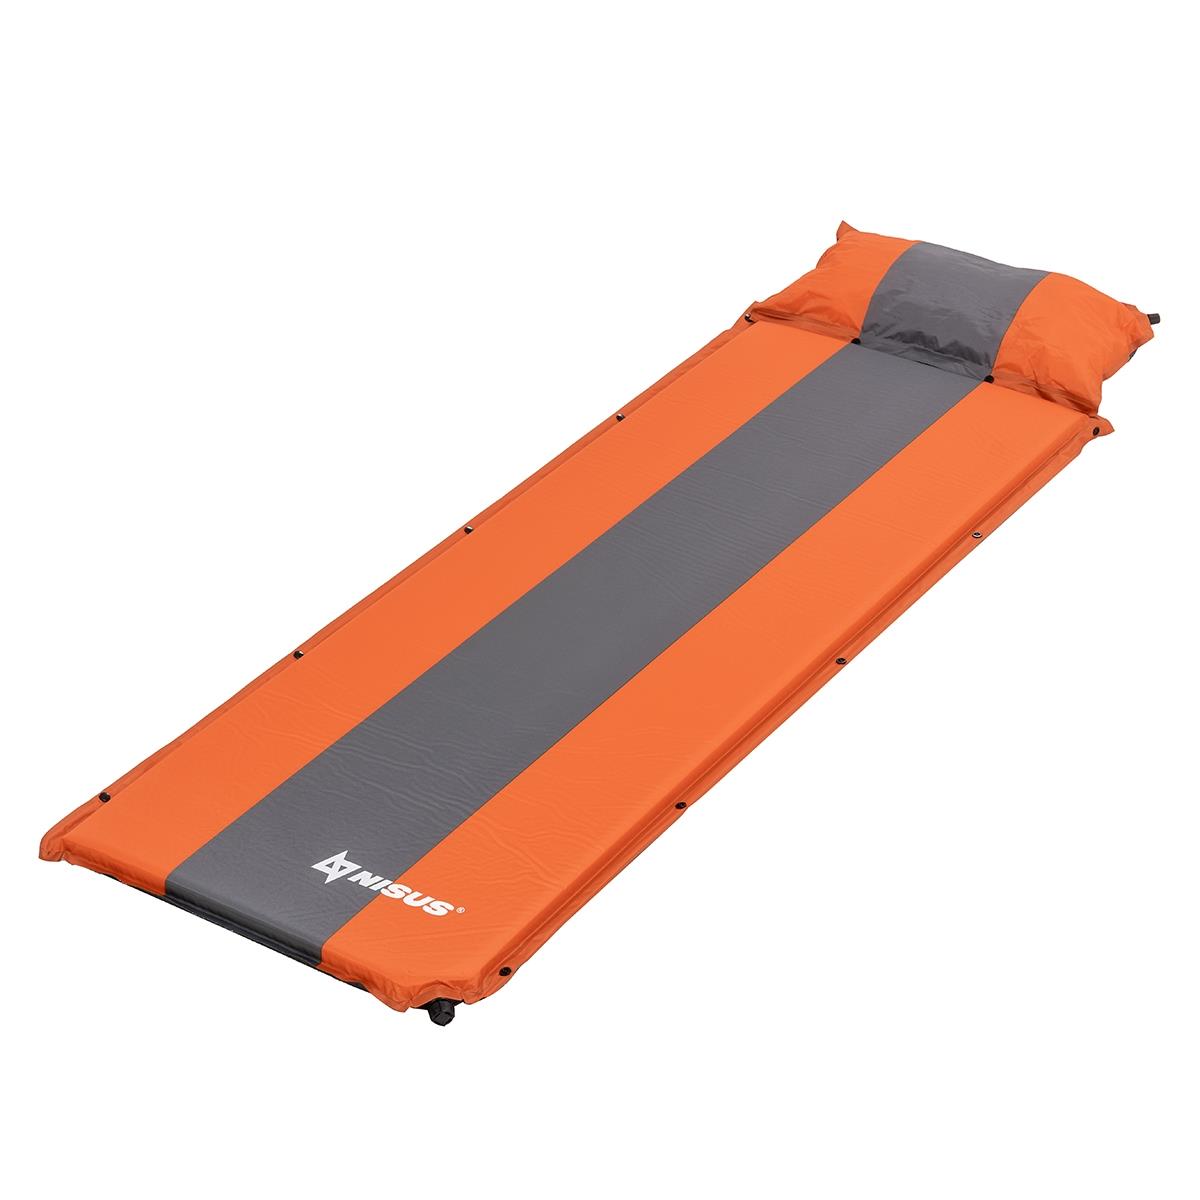 Коврик самонадув. с подушкой 30-170x65x5 оранжевый/серый (N-005P-OG) Nisus clp домик логово блюм с вынимаемой подушкой